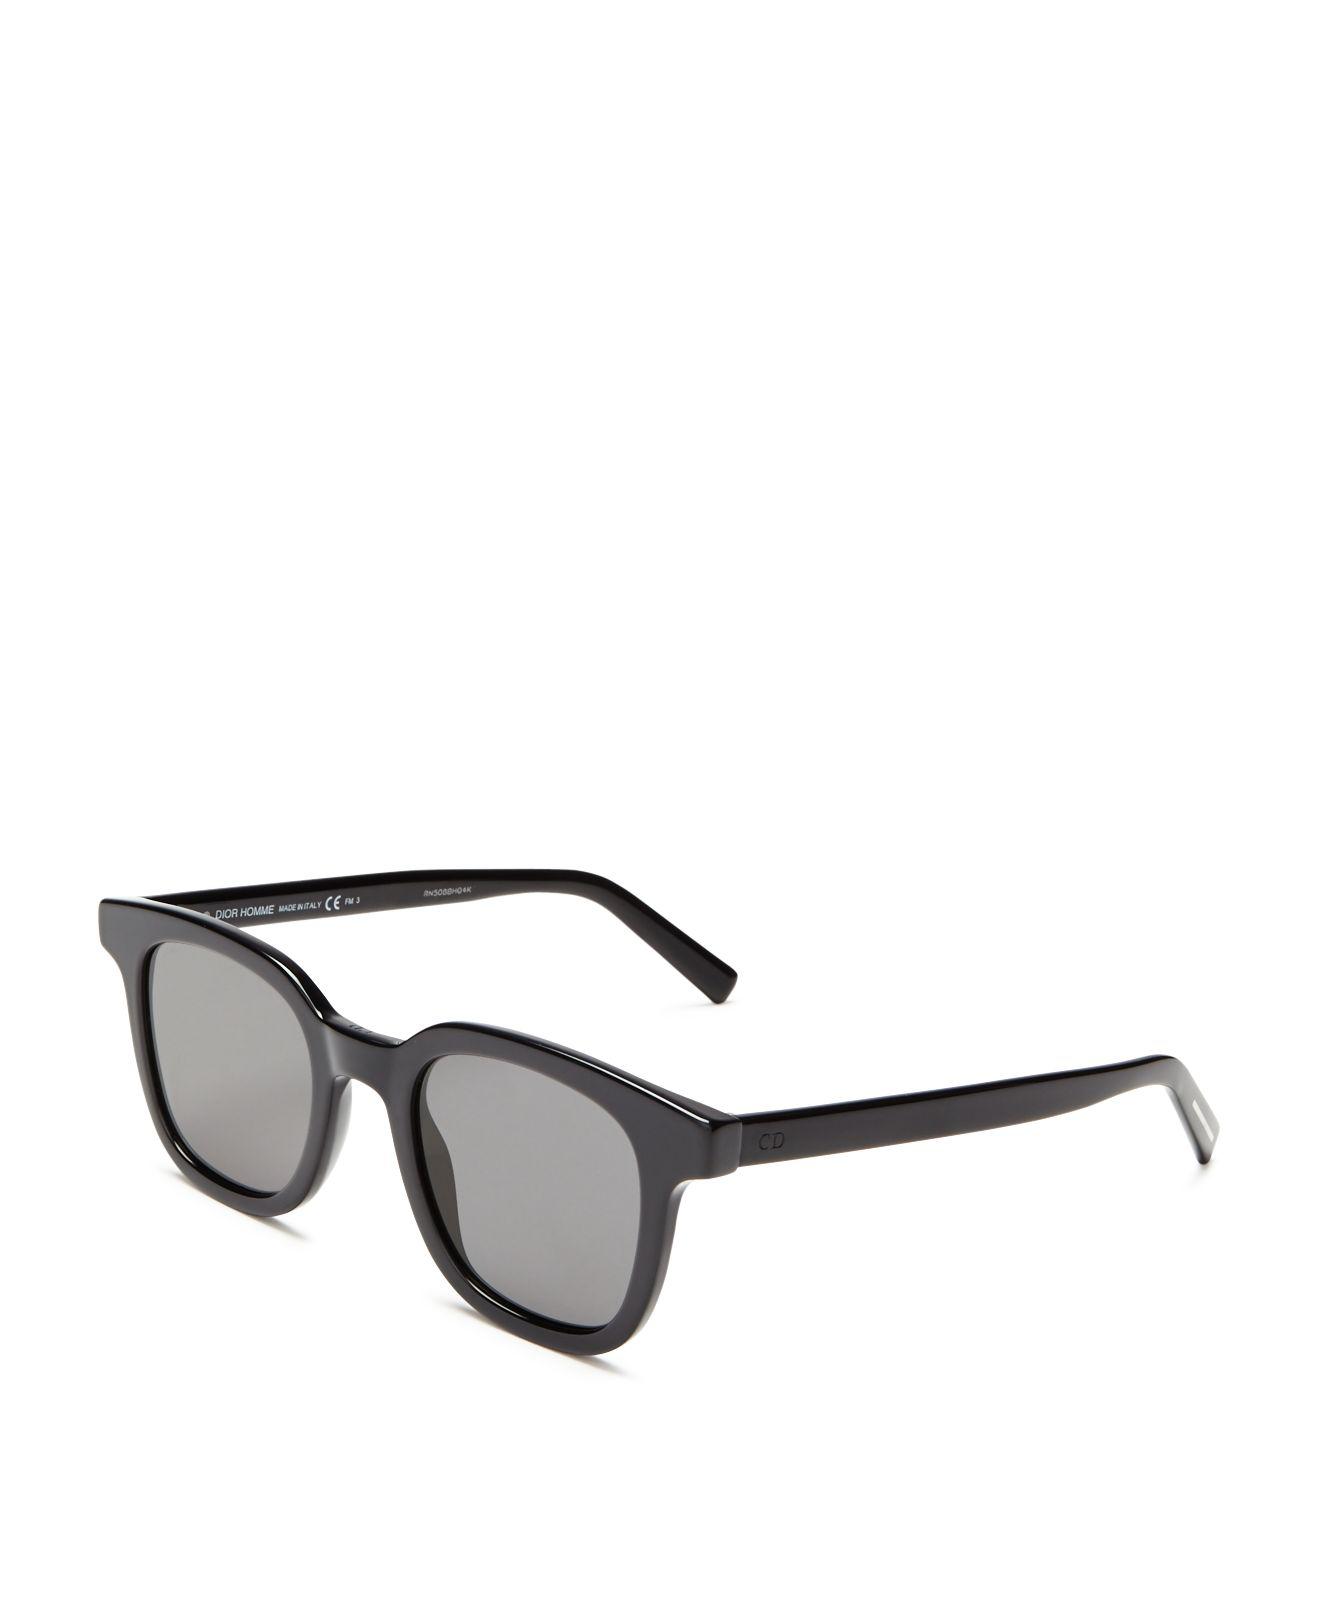 ademen de begeleiding Zelfrespect Dior Homme Blacktie 219/s Sunglasses, 49mm | Lyst